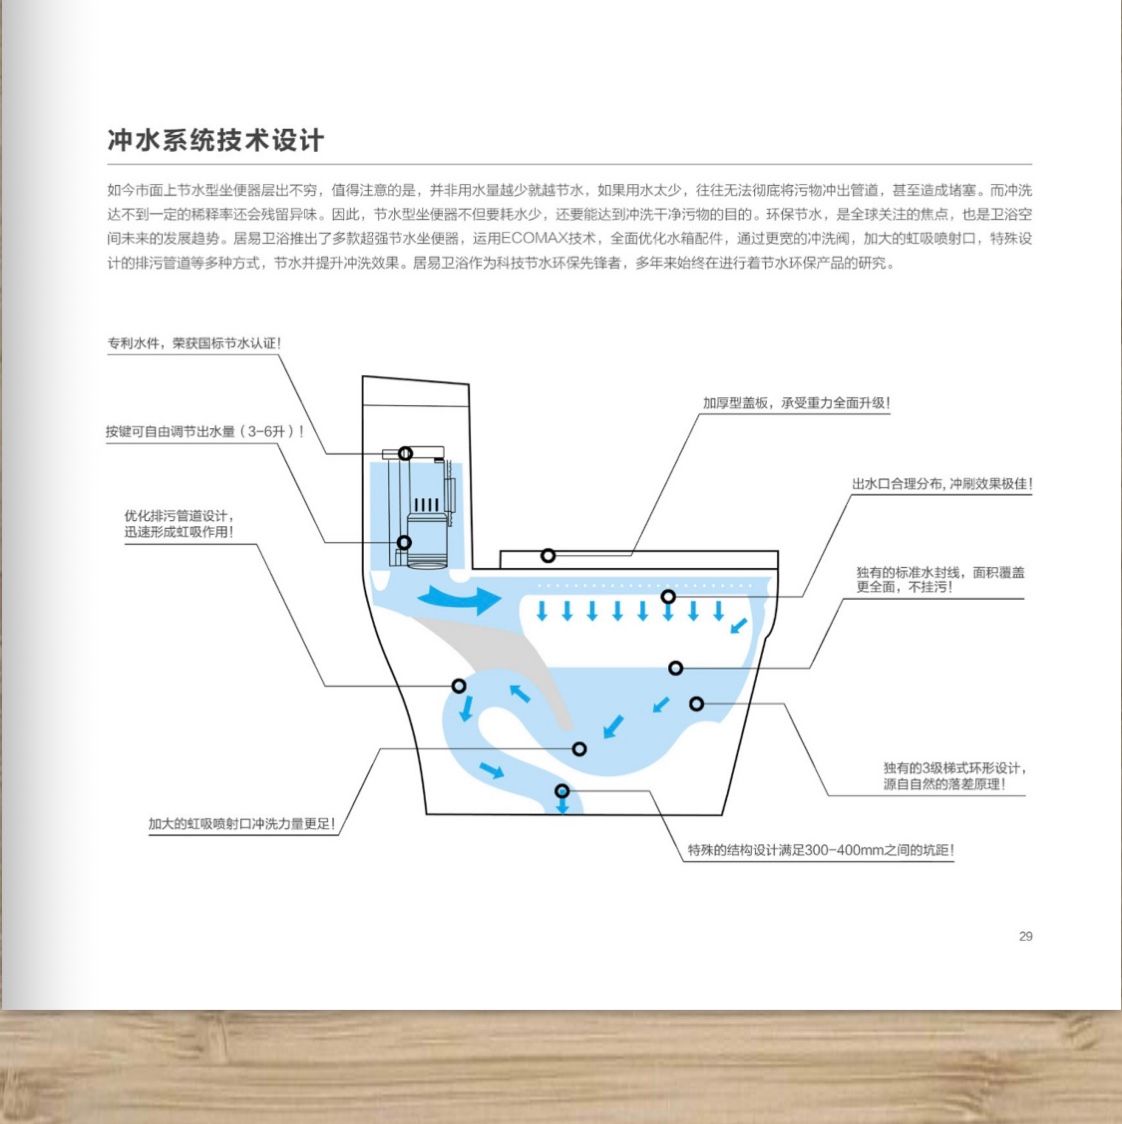 513居易卫浴原创设计超大管道超节水技术坐便器专利马桶详情3